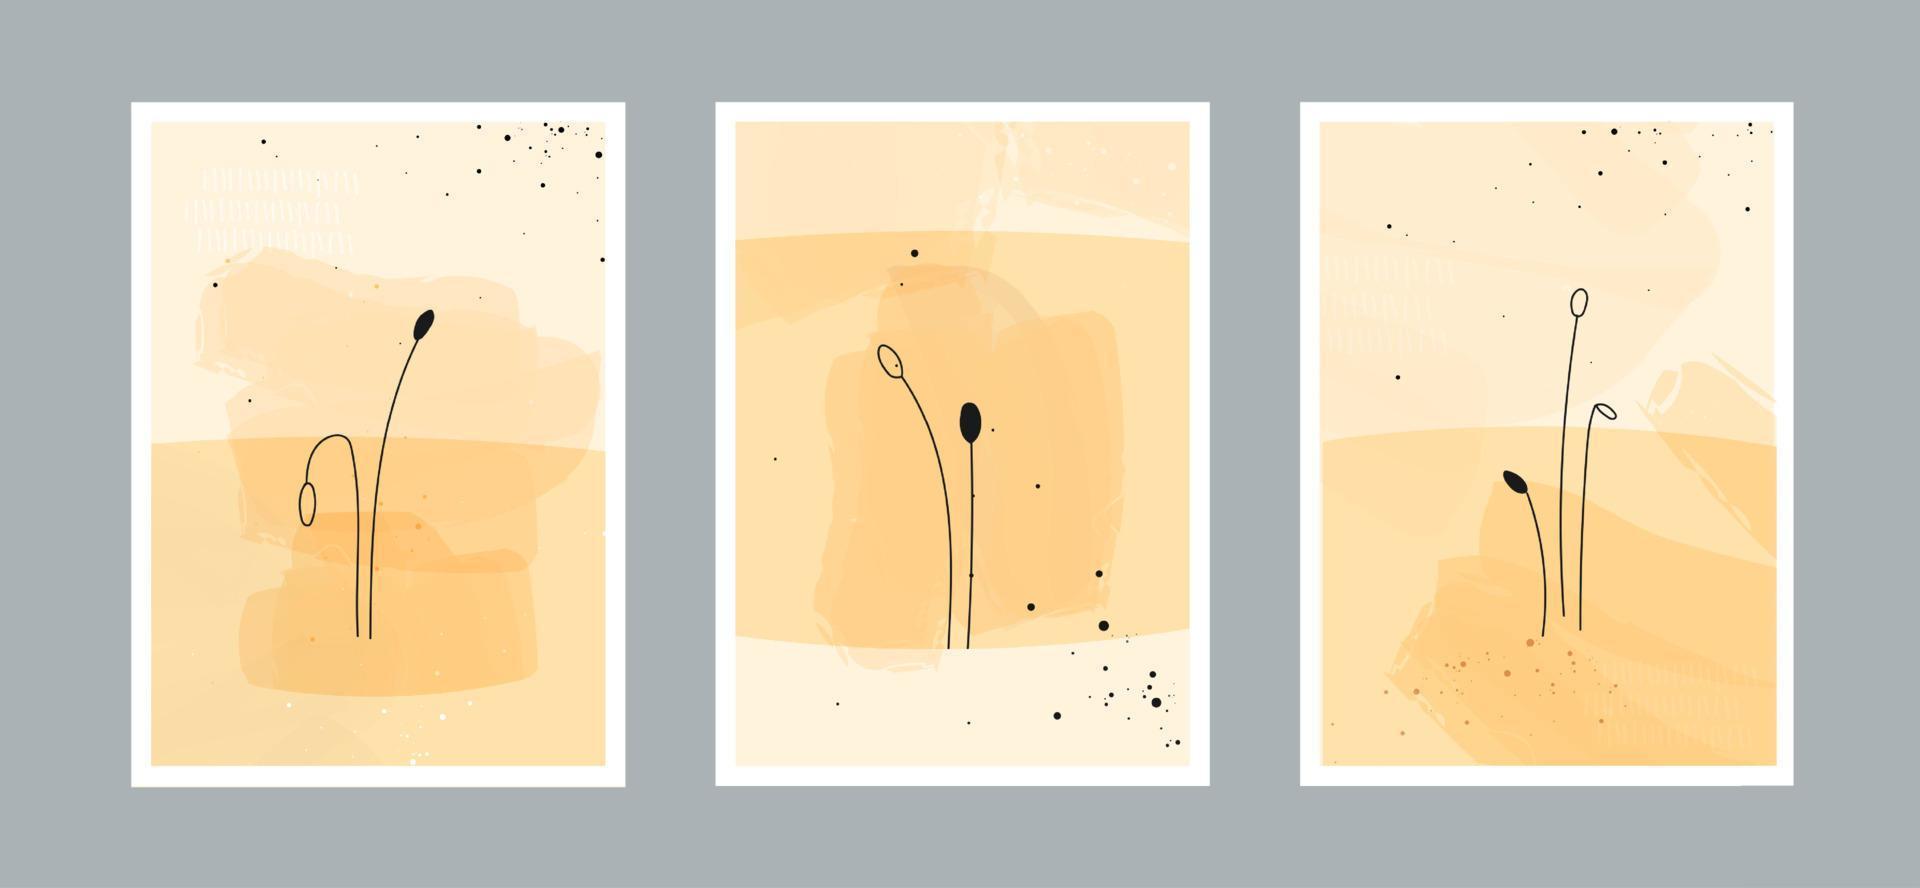 modern abstrakt linje minimalistisk konstbakgrund med olika former för väggdekoration, vykort eller broschyromslagsdesign. vektor illustrationer design.